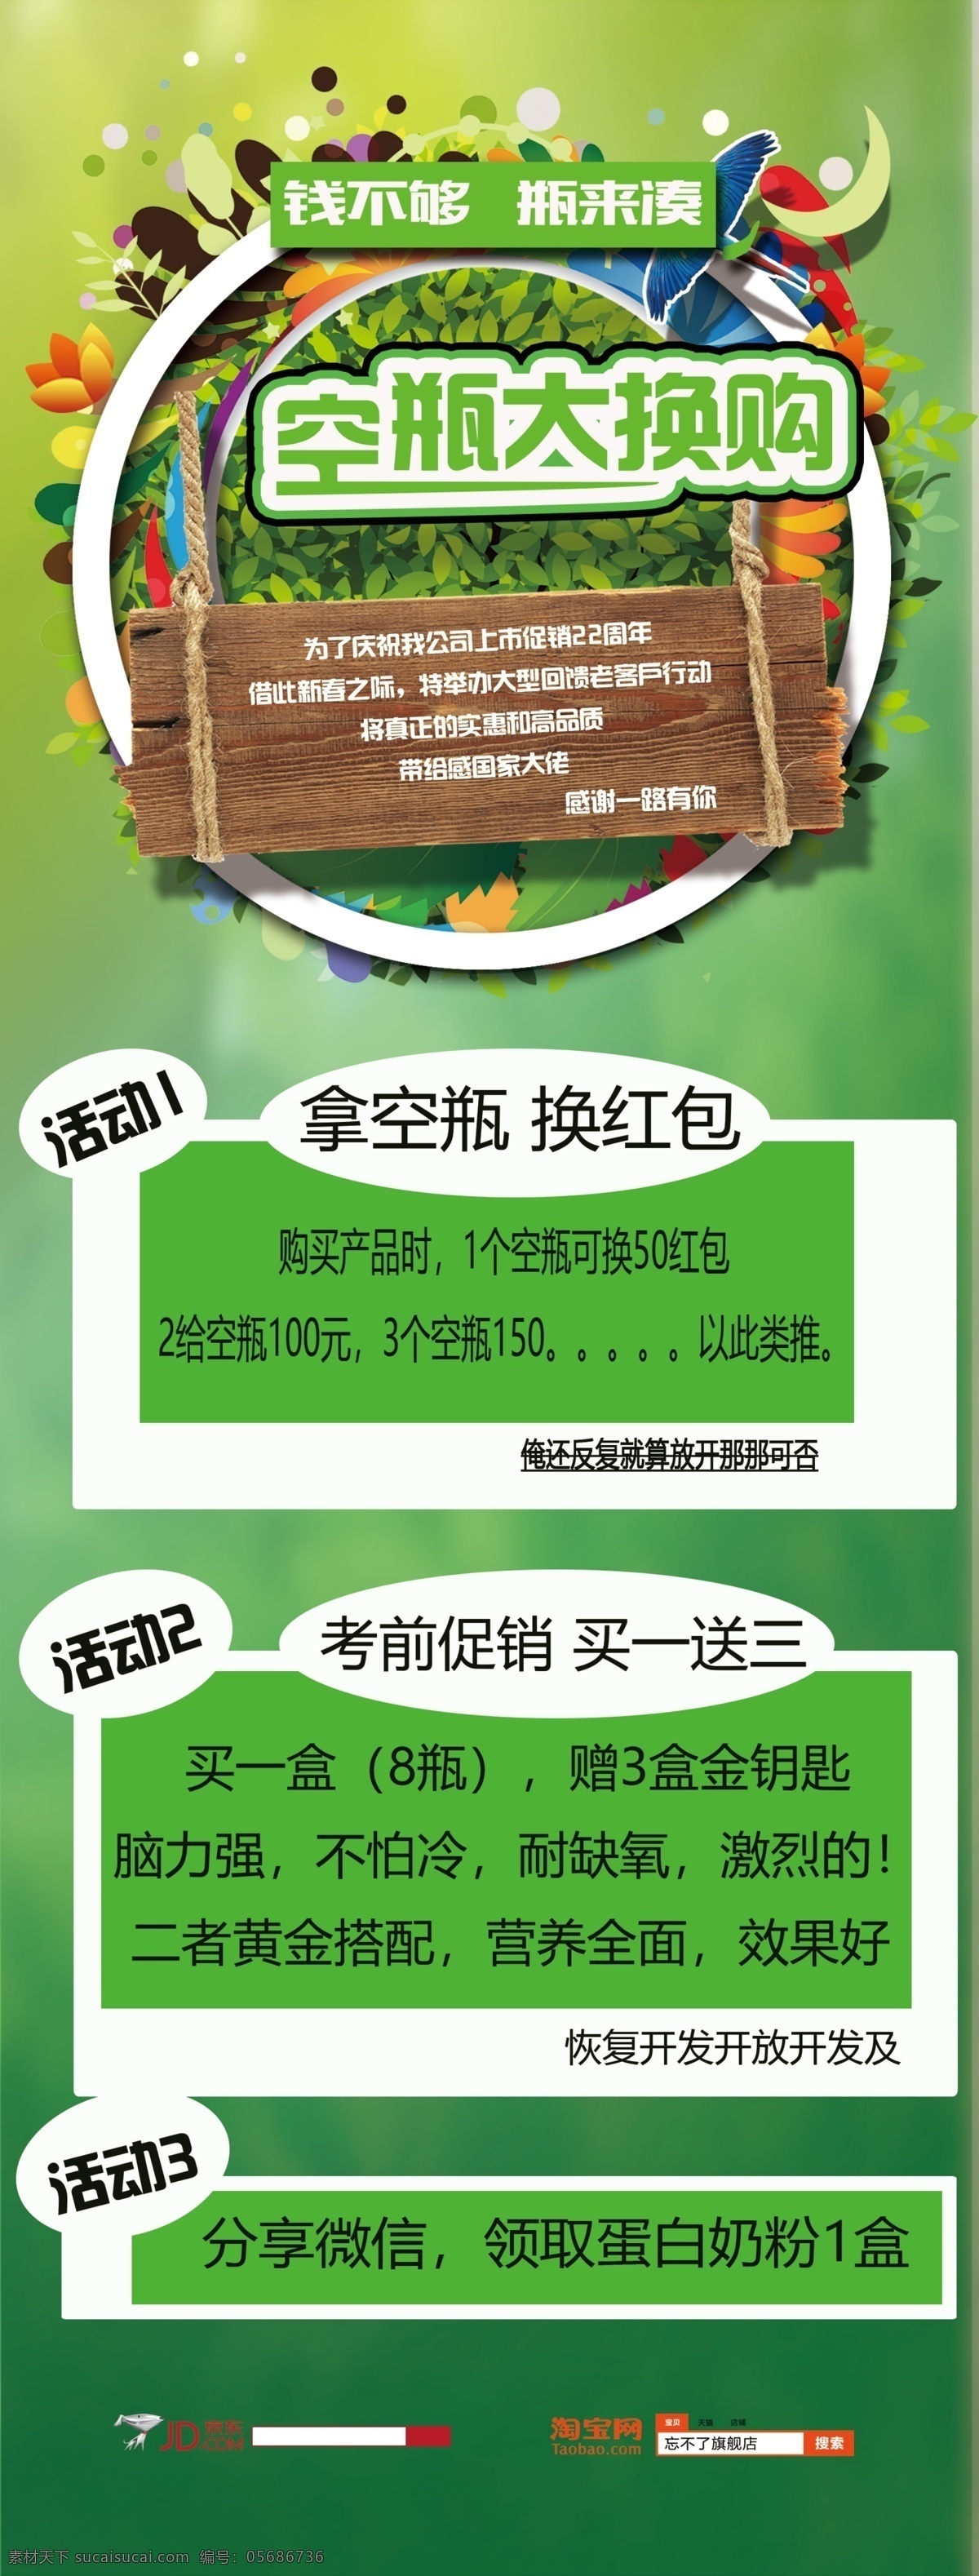 空瓶大放购 瓶子 空瓶 购买 主题 绿色 环保 展架 海报 web 界面设计 中文模板